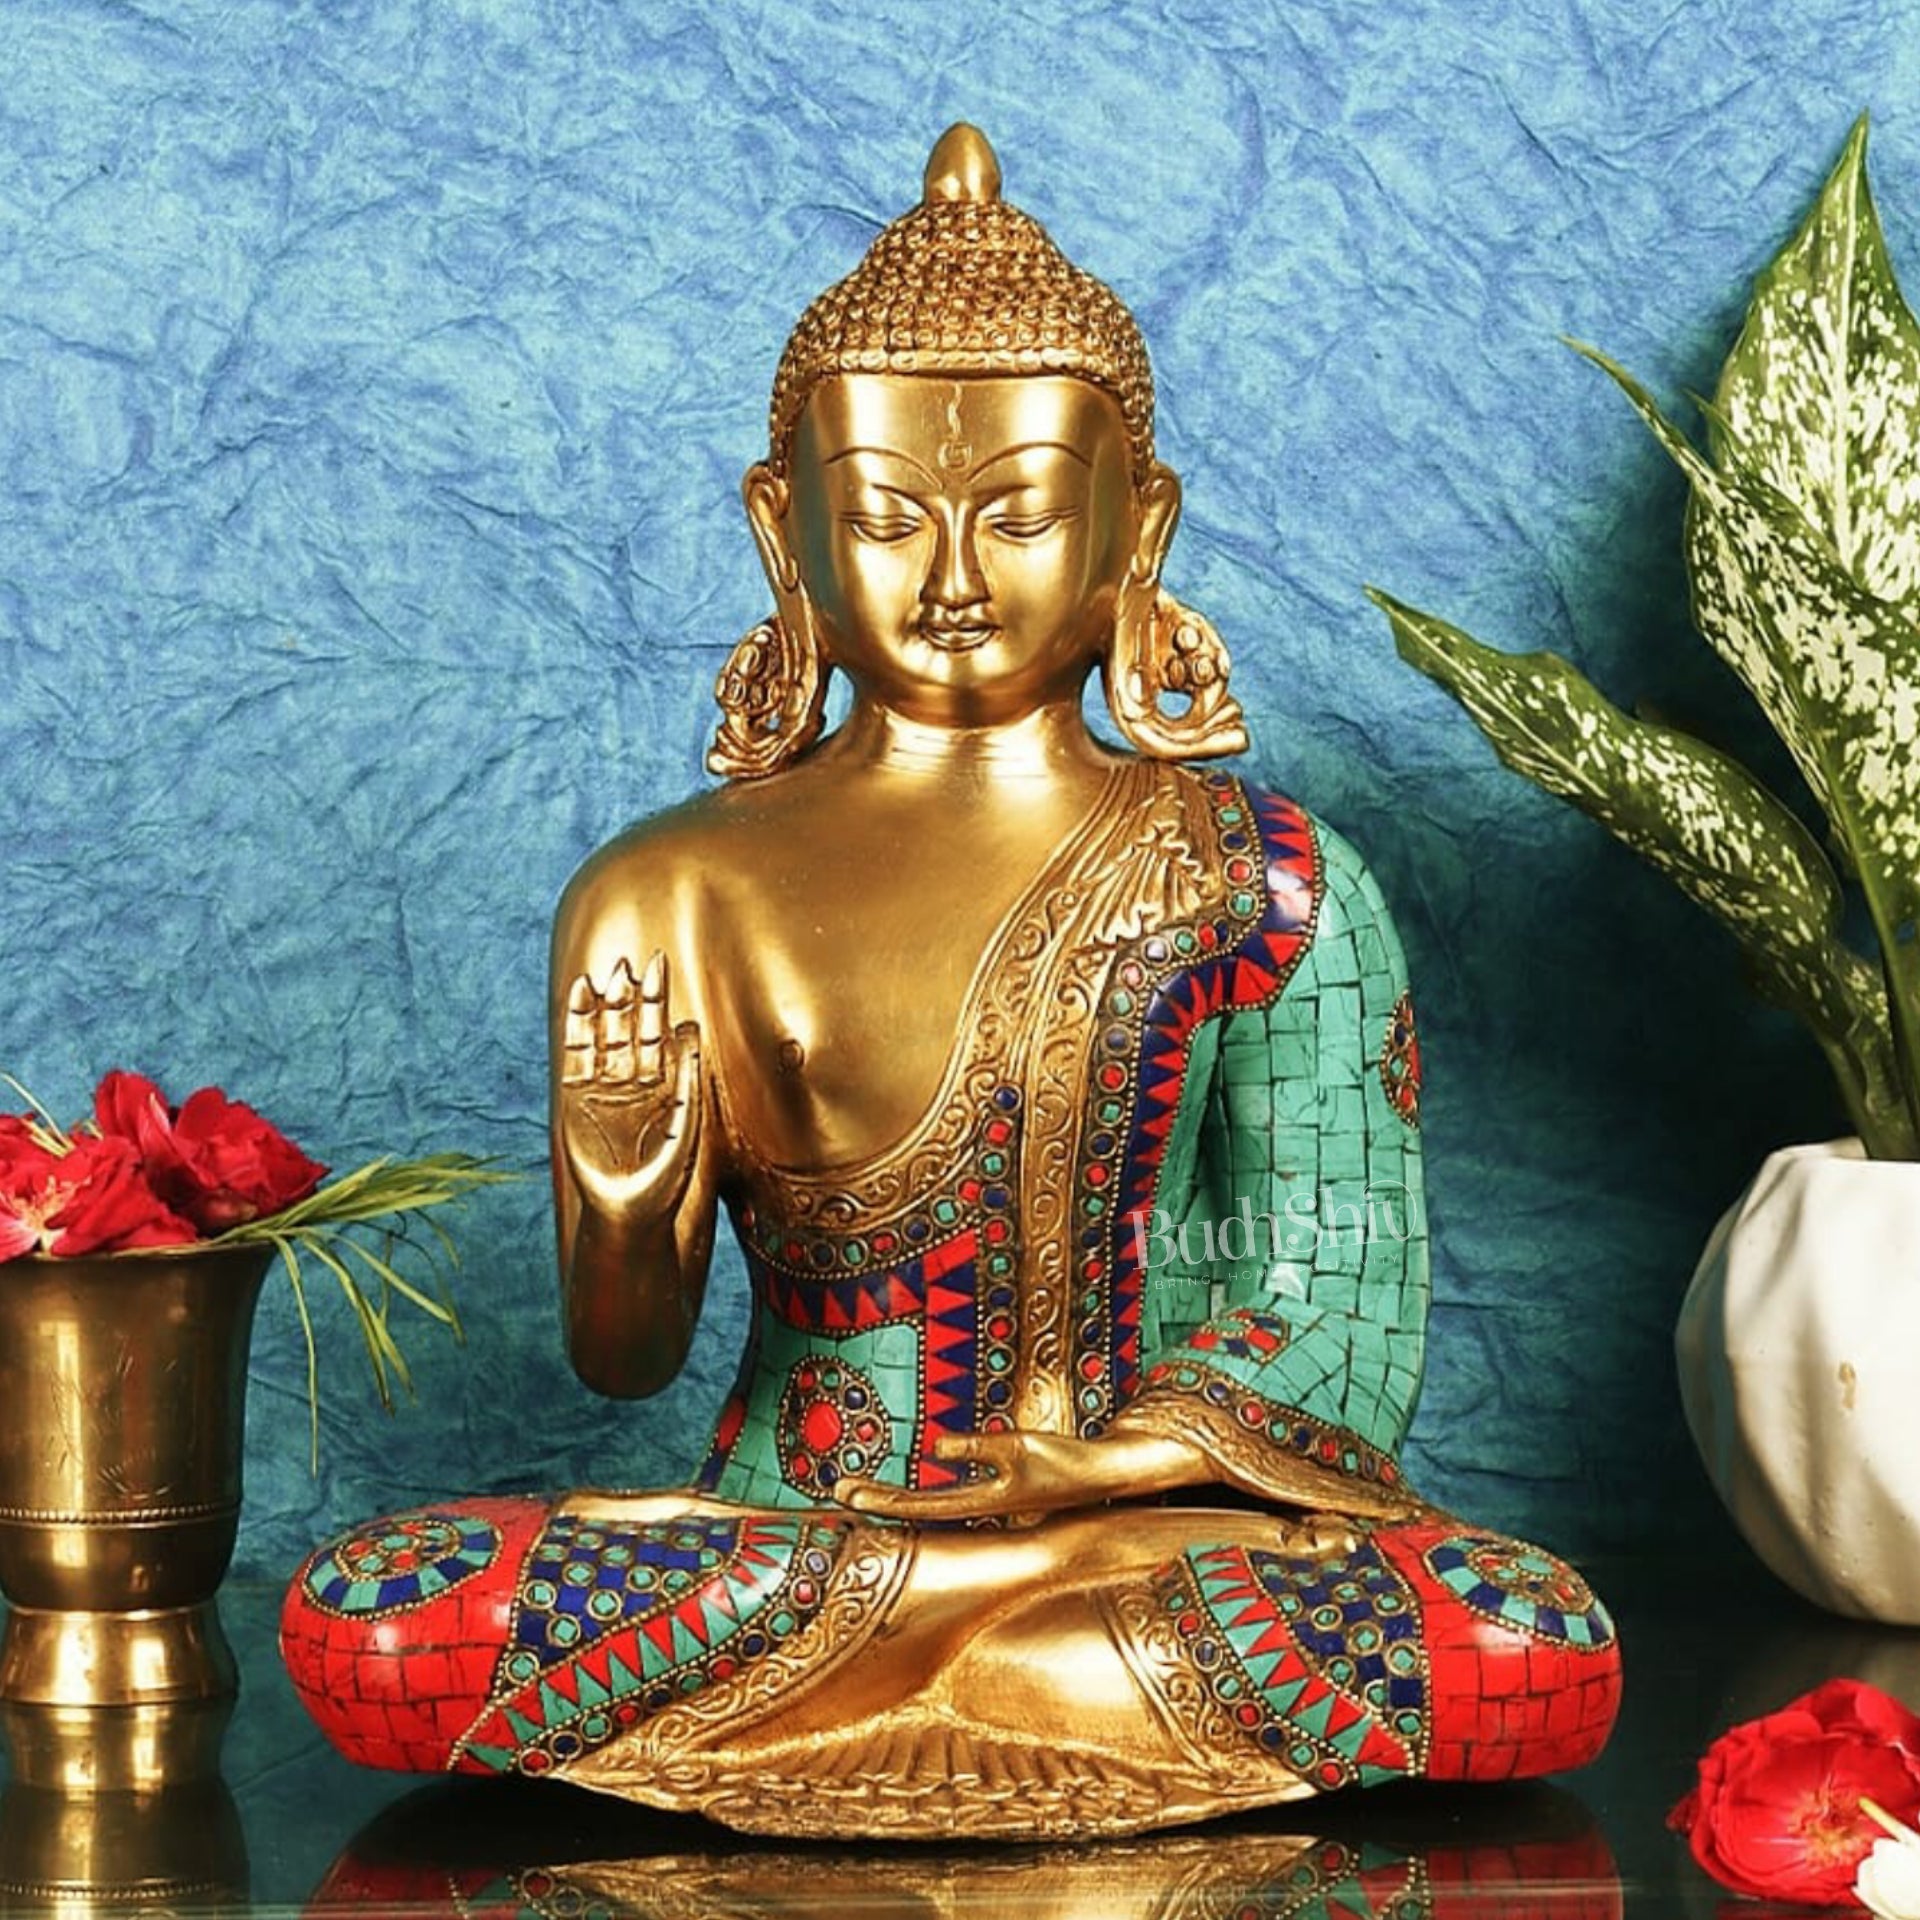 Buddha Aashirwaad Brass Idol with Meenakari Stonework 12 inches - Budhshiv.com